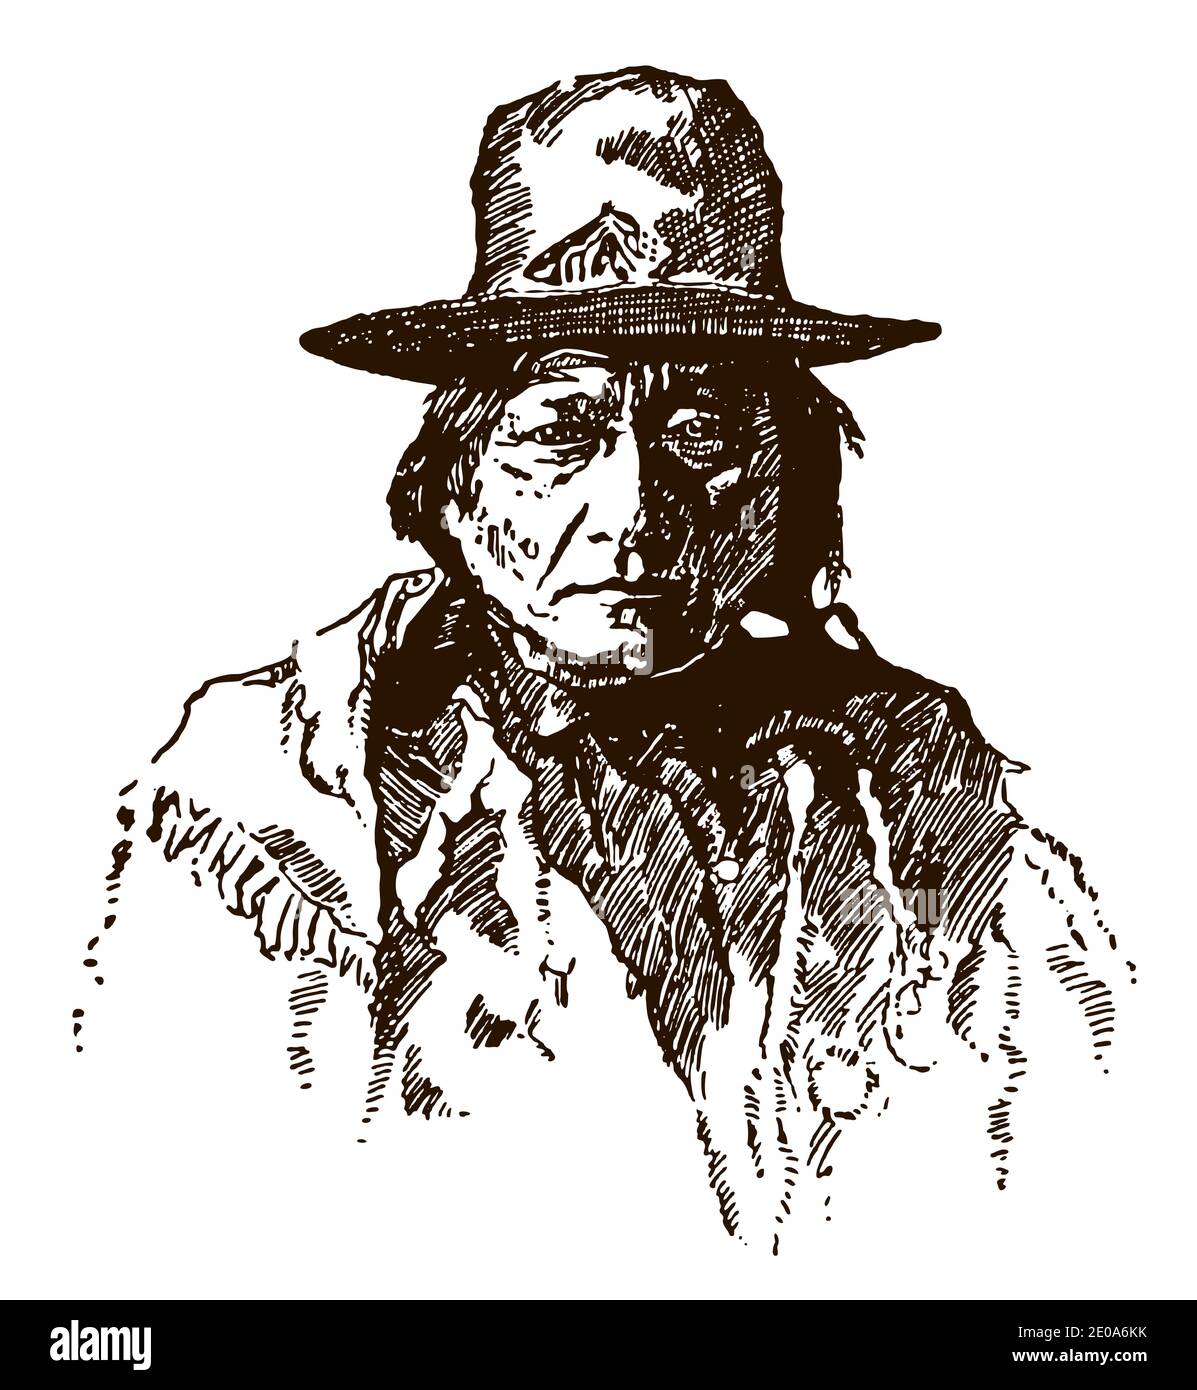 Portrait de l'historique Native American Hunkpapa Lakota Sioux chef Bull assis portant un chapeau, en vue frontale Illustration de Vecteur